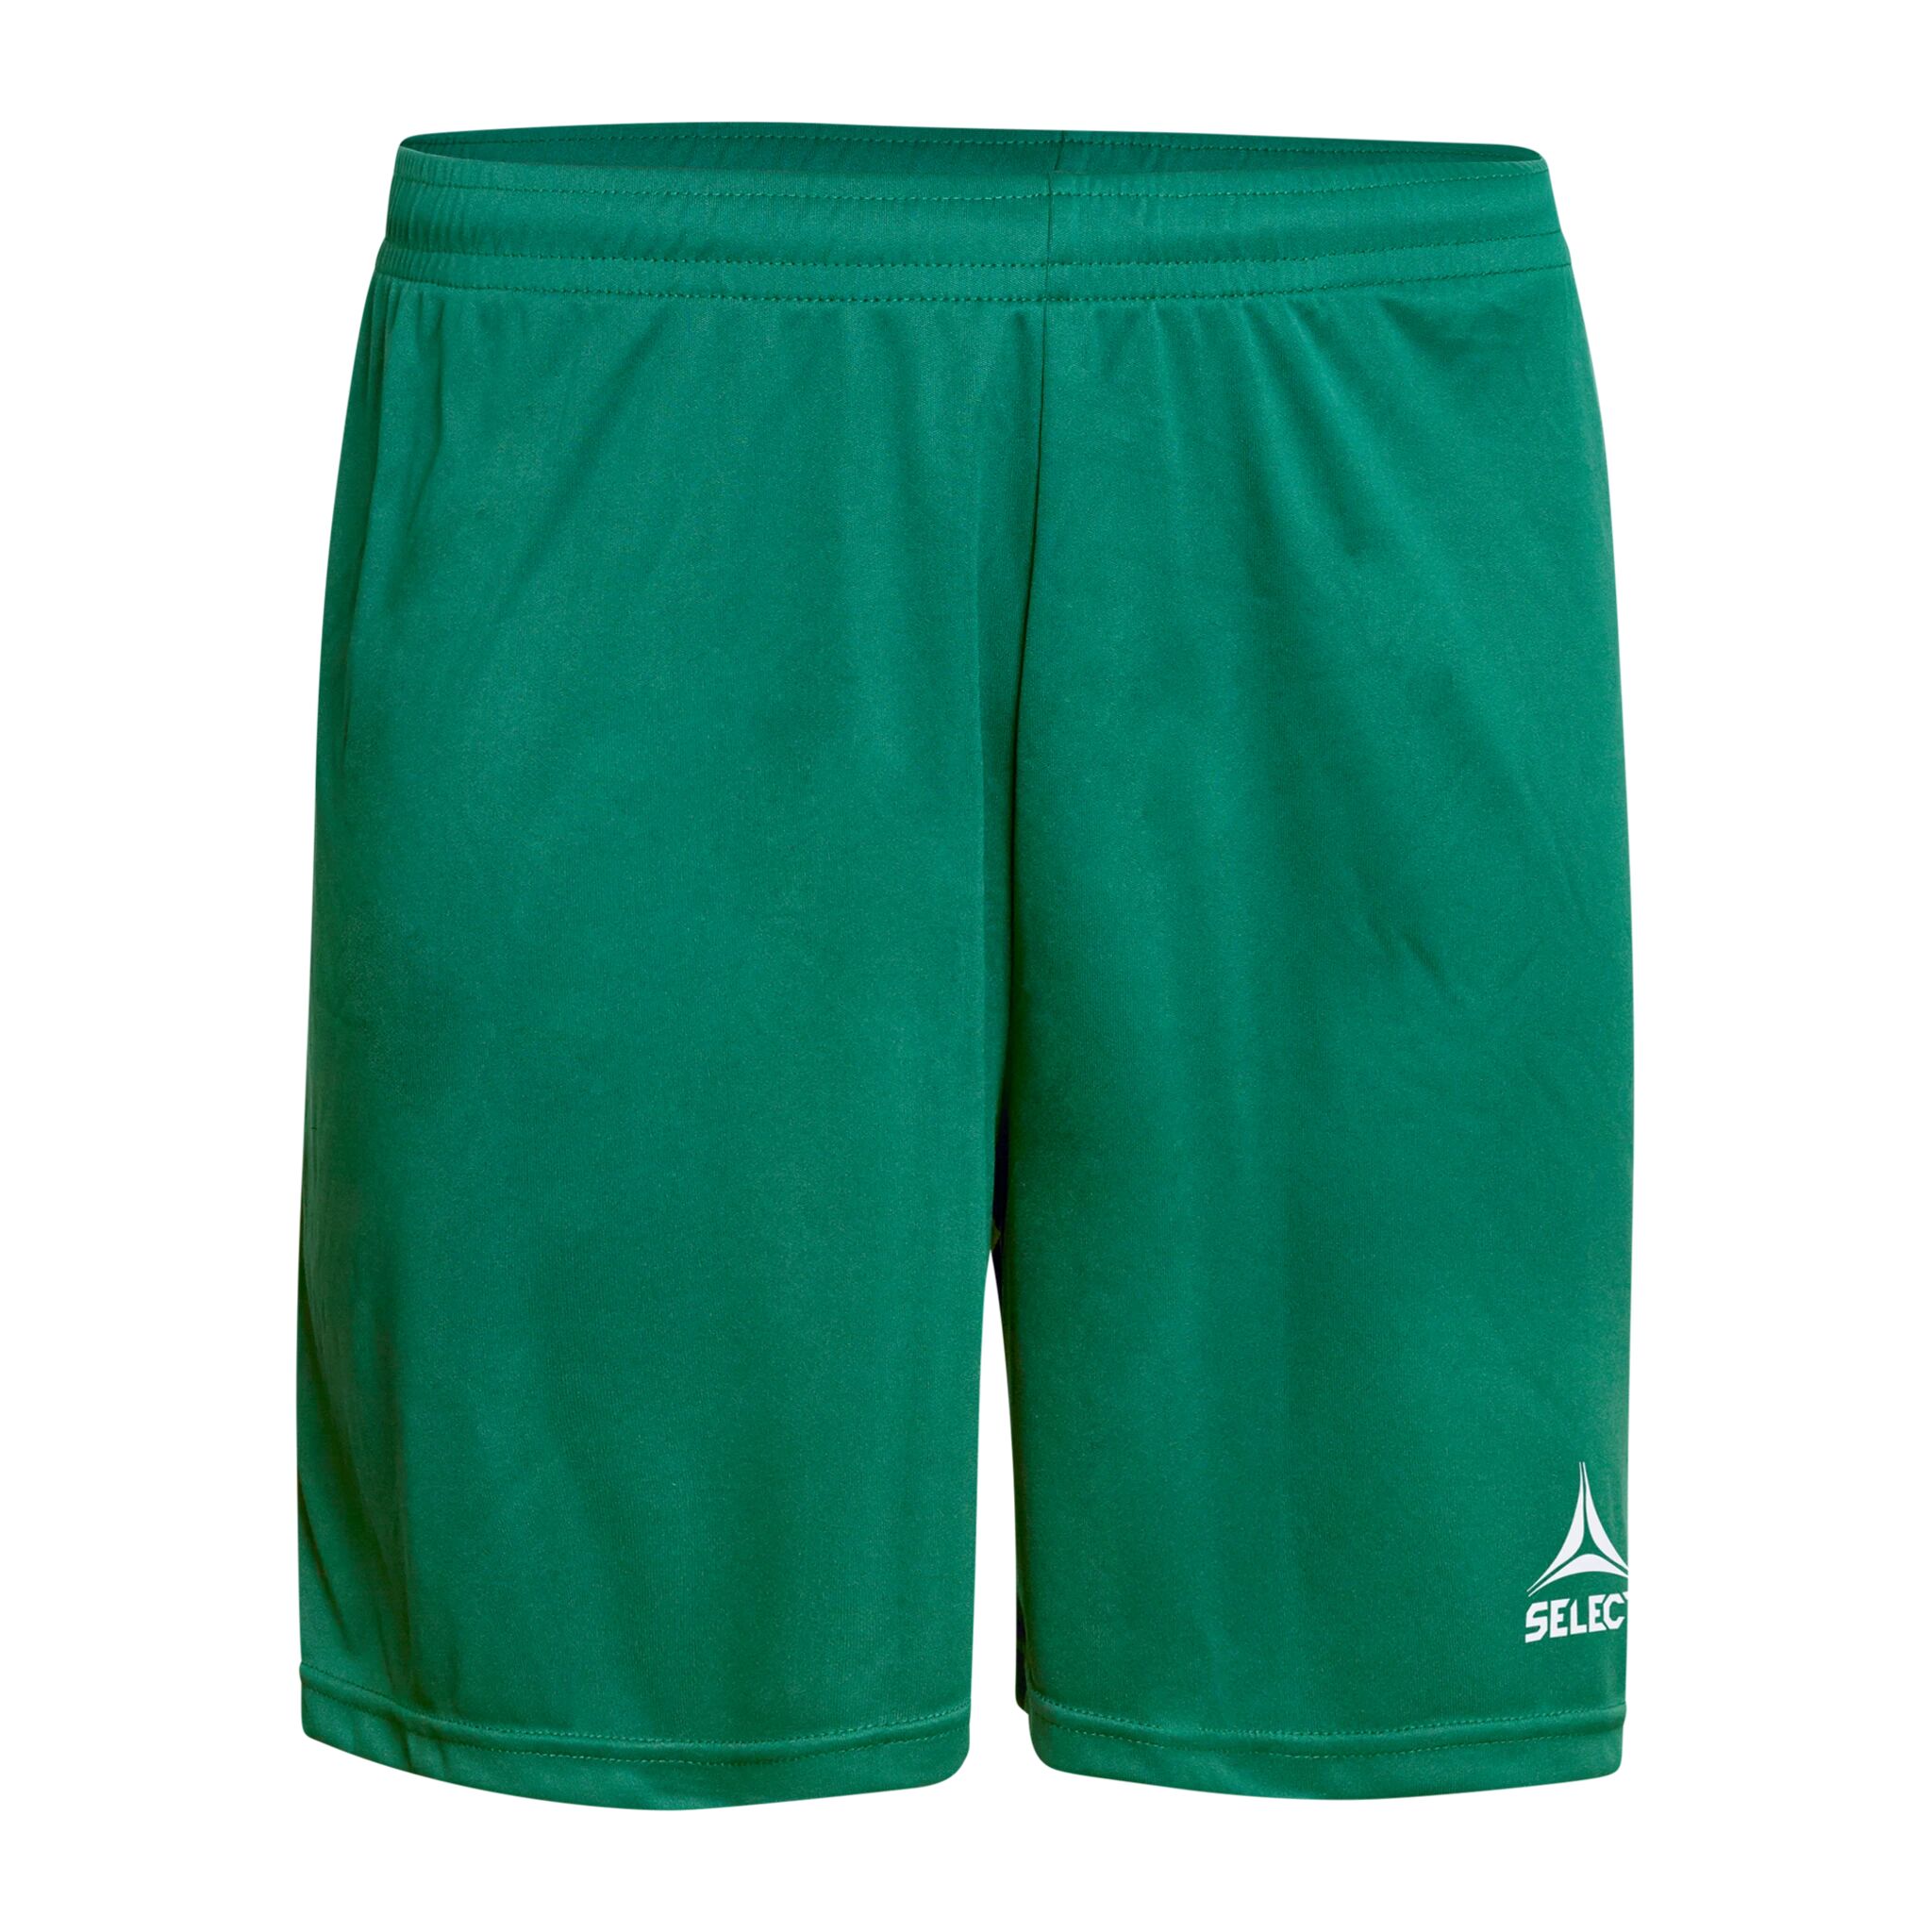 Select Player shorts Pisa, shorts senior 116 Green